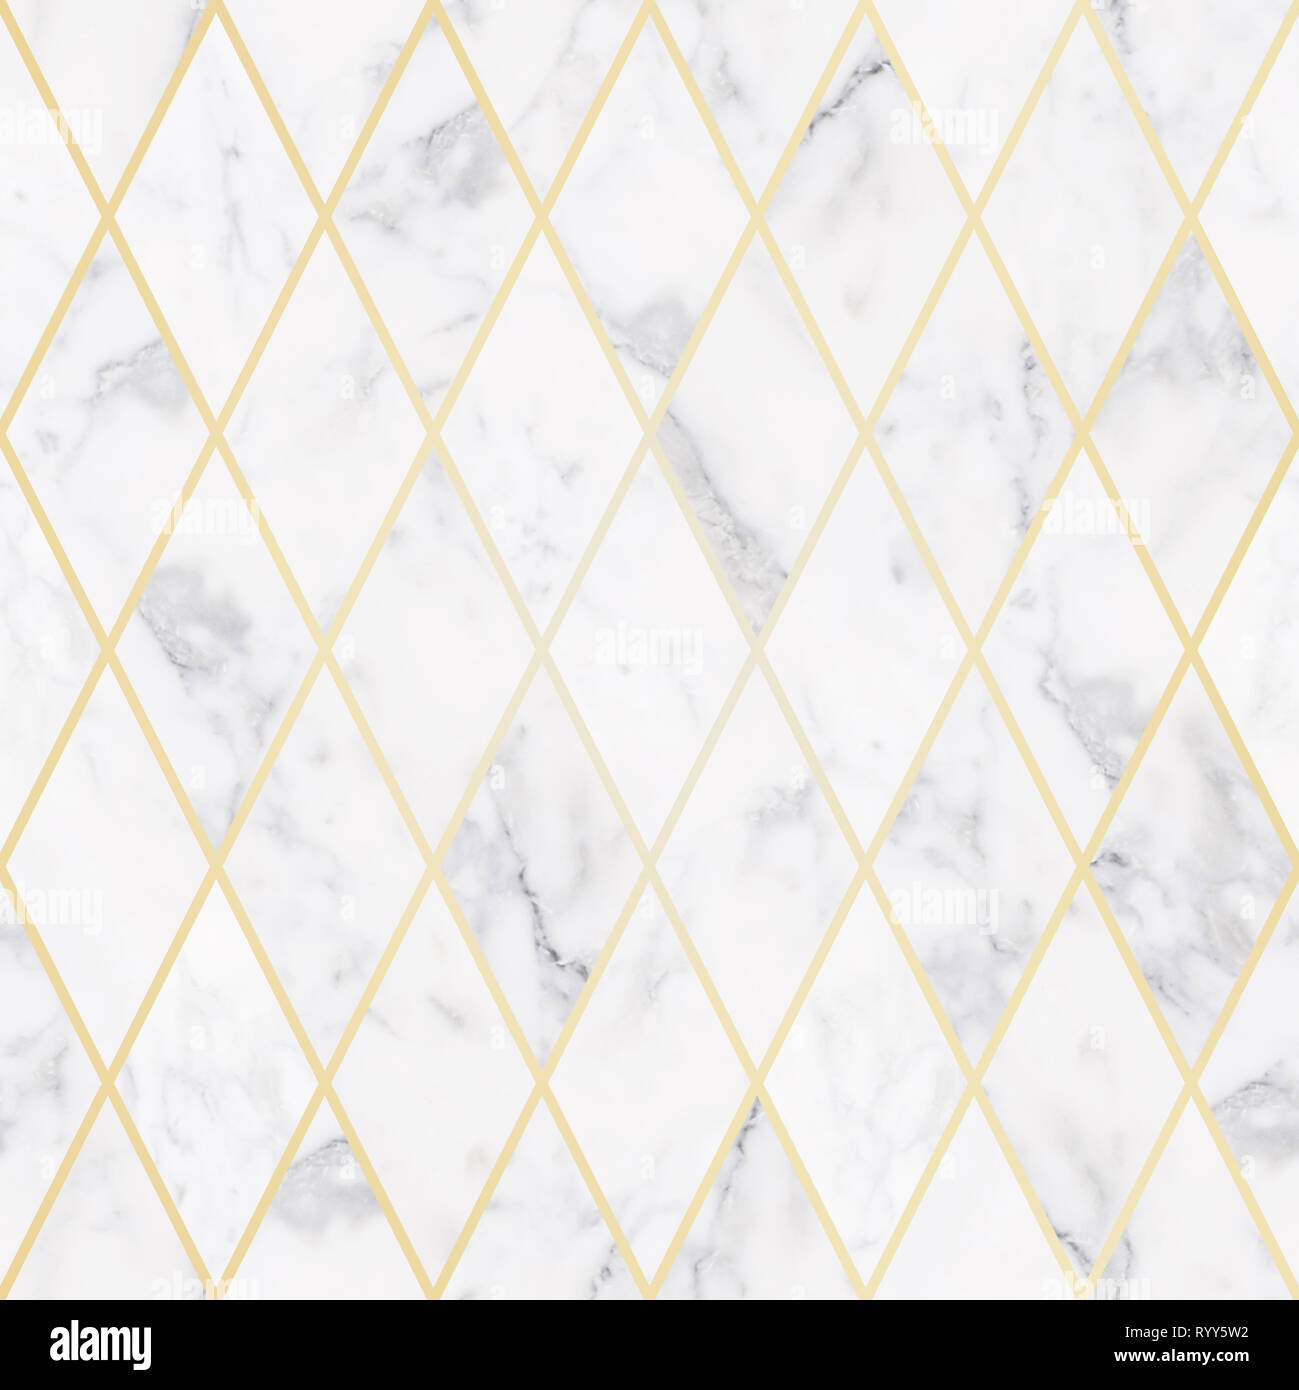 Lujo perfecta textura de piedra de mármol blanco, con patrón de rombos de oro Foto de stock